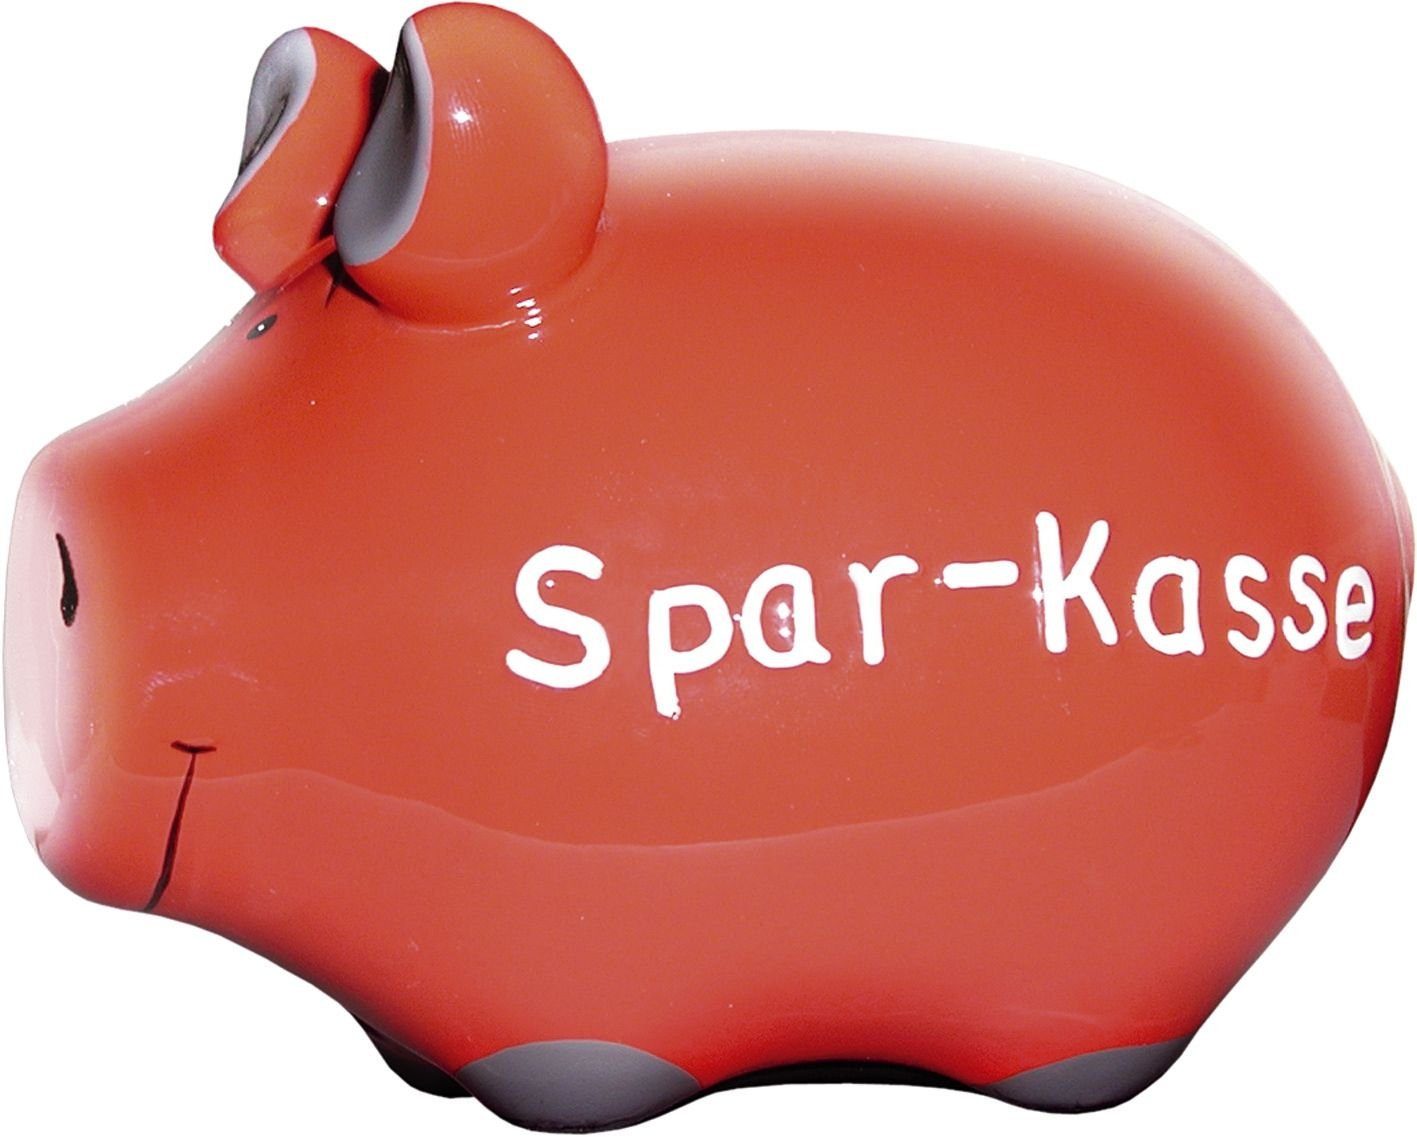 KCG Klemmen Spardose Schwein "Spar-Kasse" - Keramik, klein